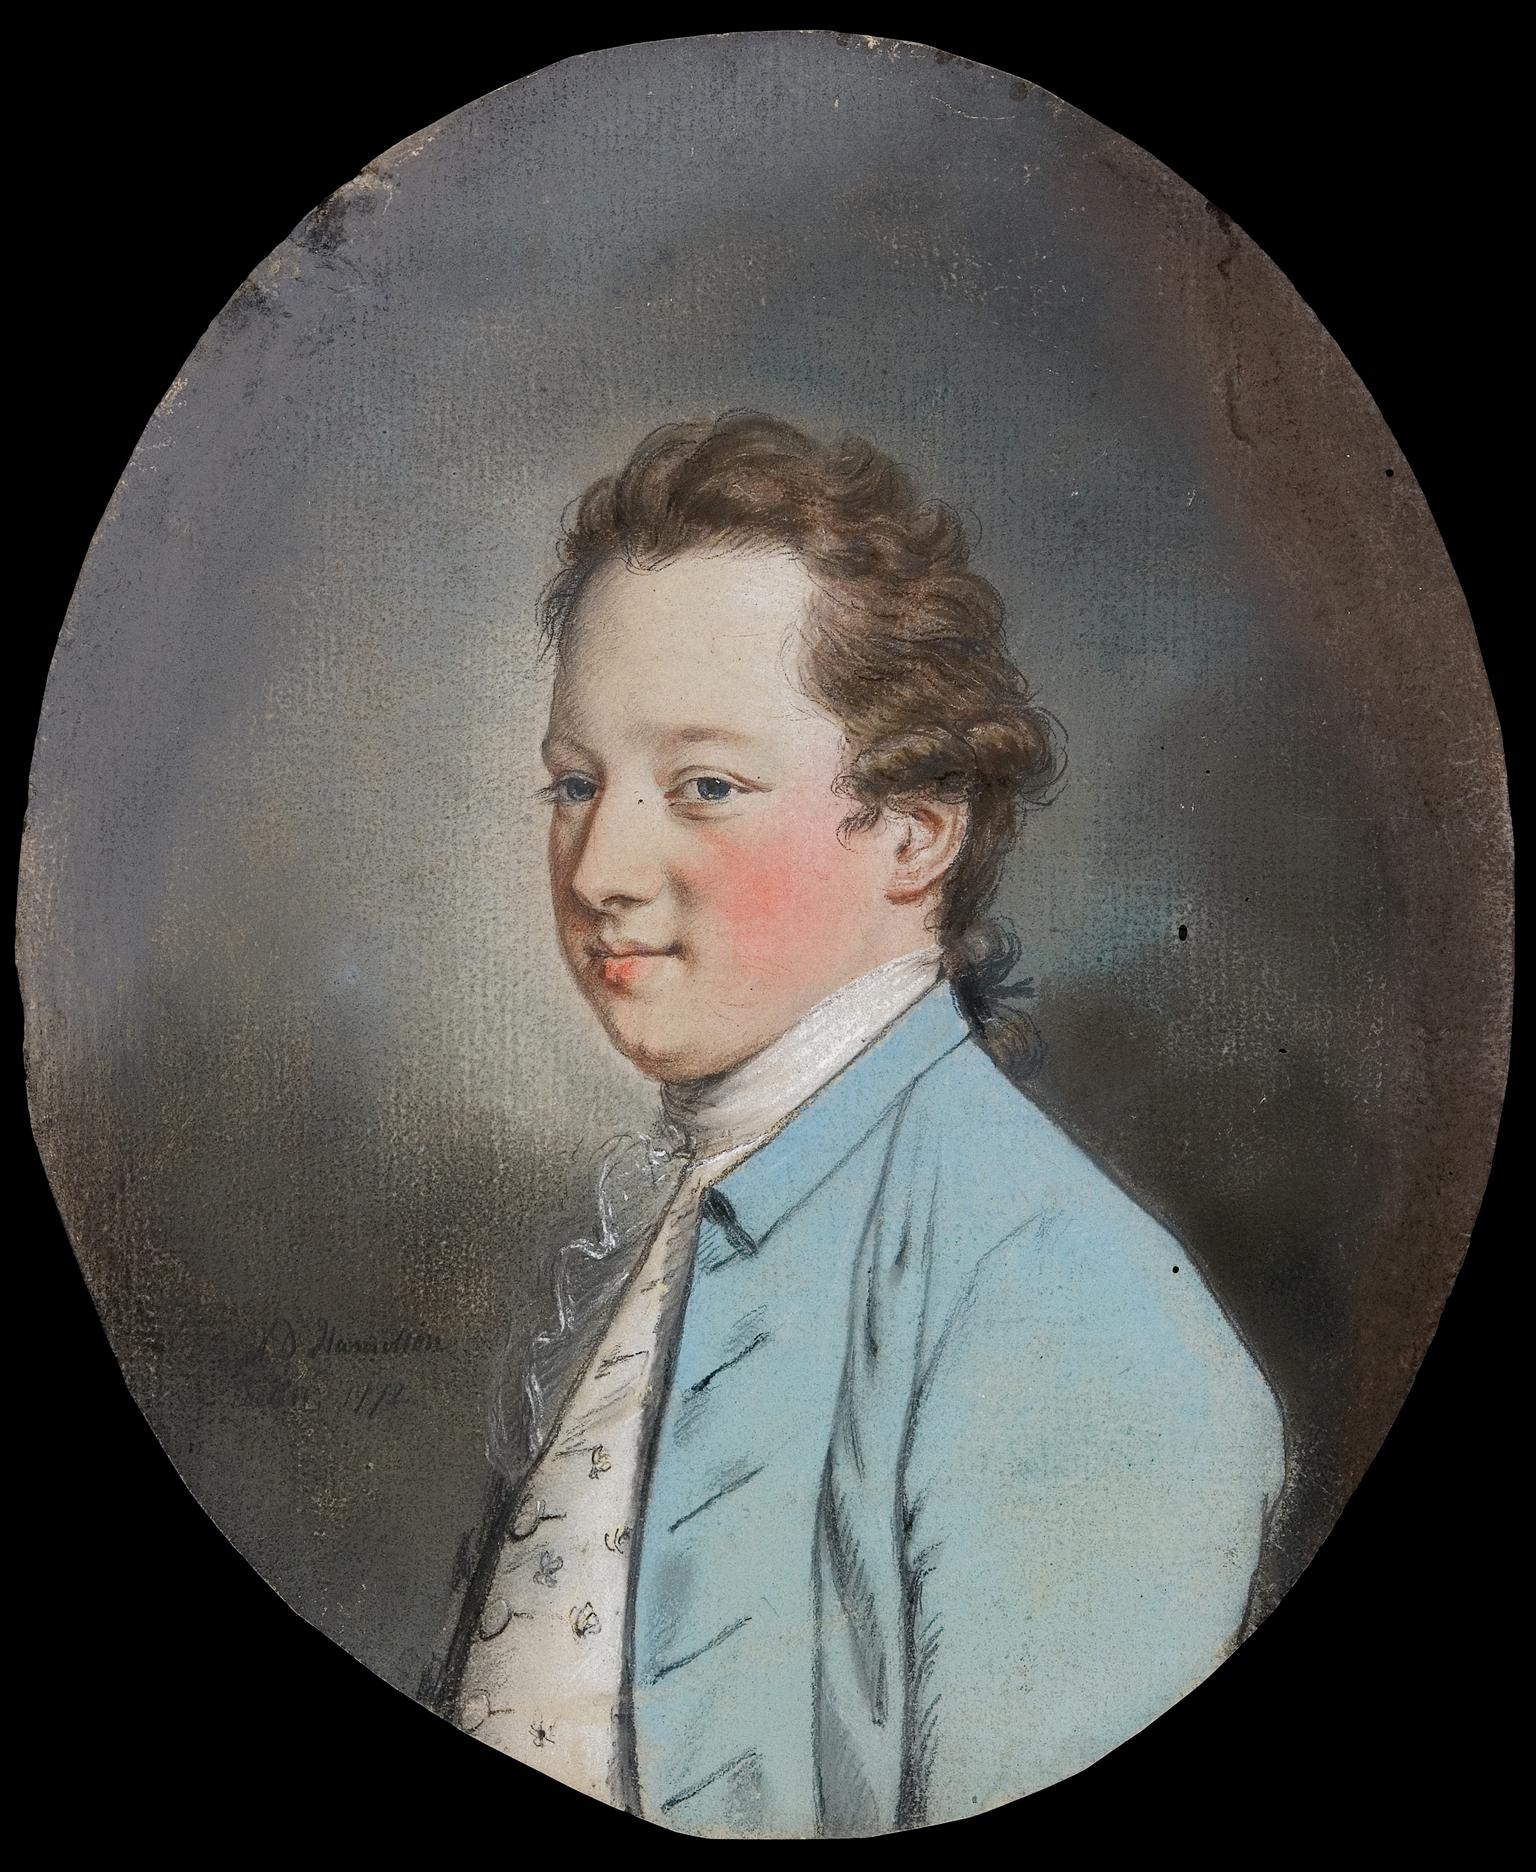 Sir Watkin Williams Wynn, 4th Baronet (1749-1789)